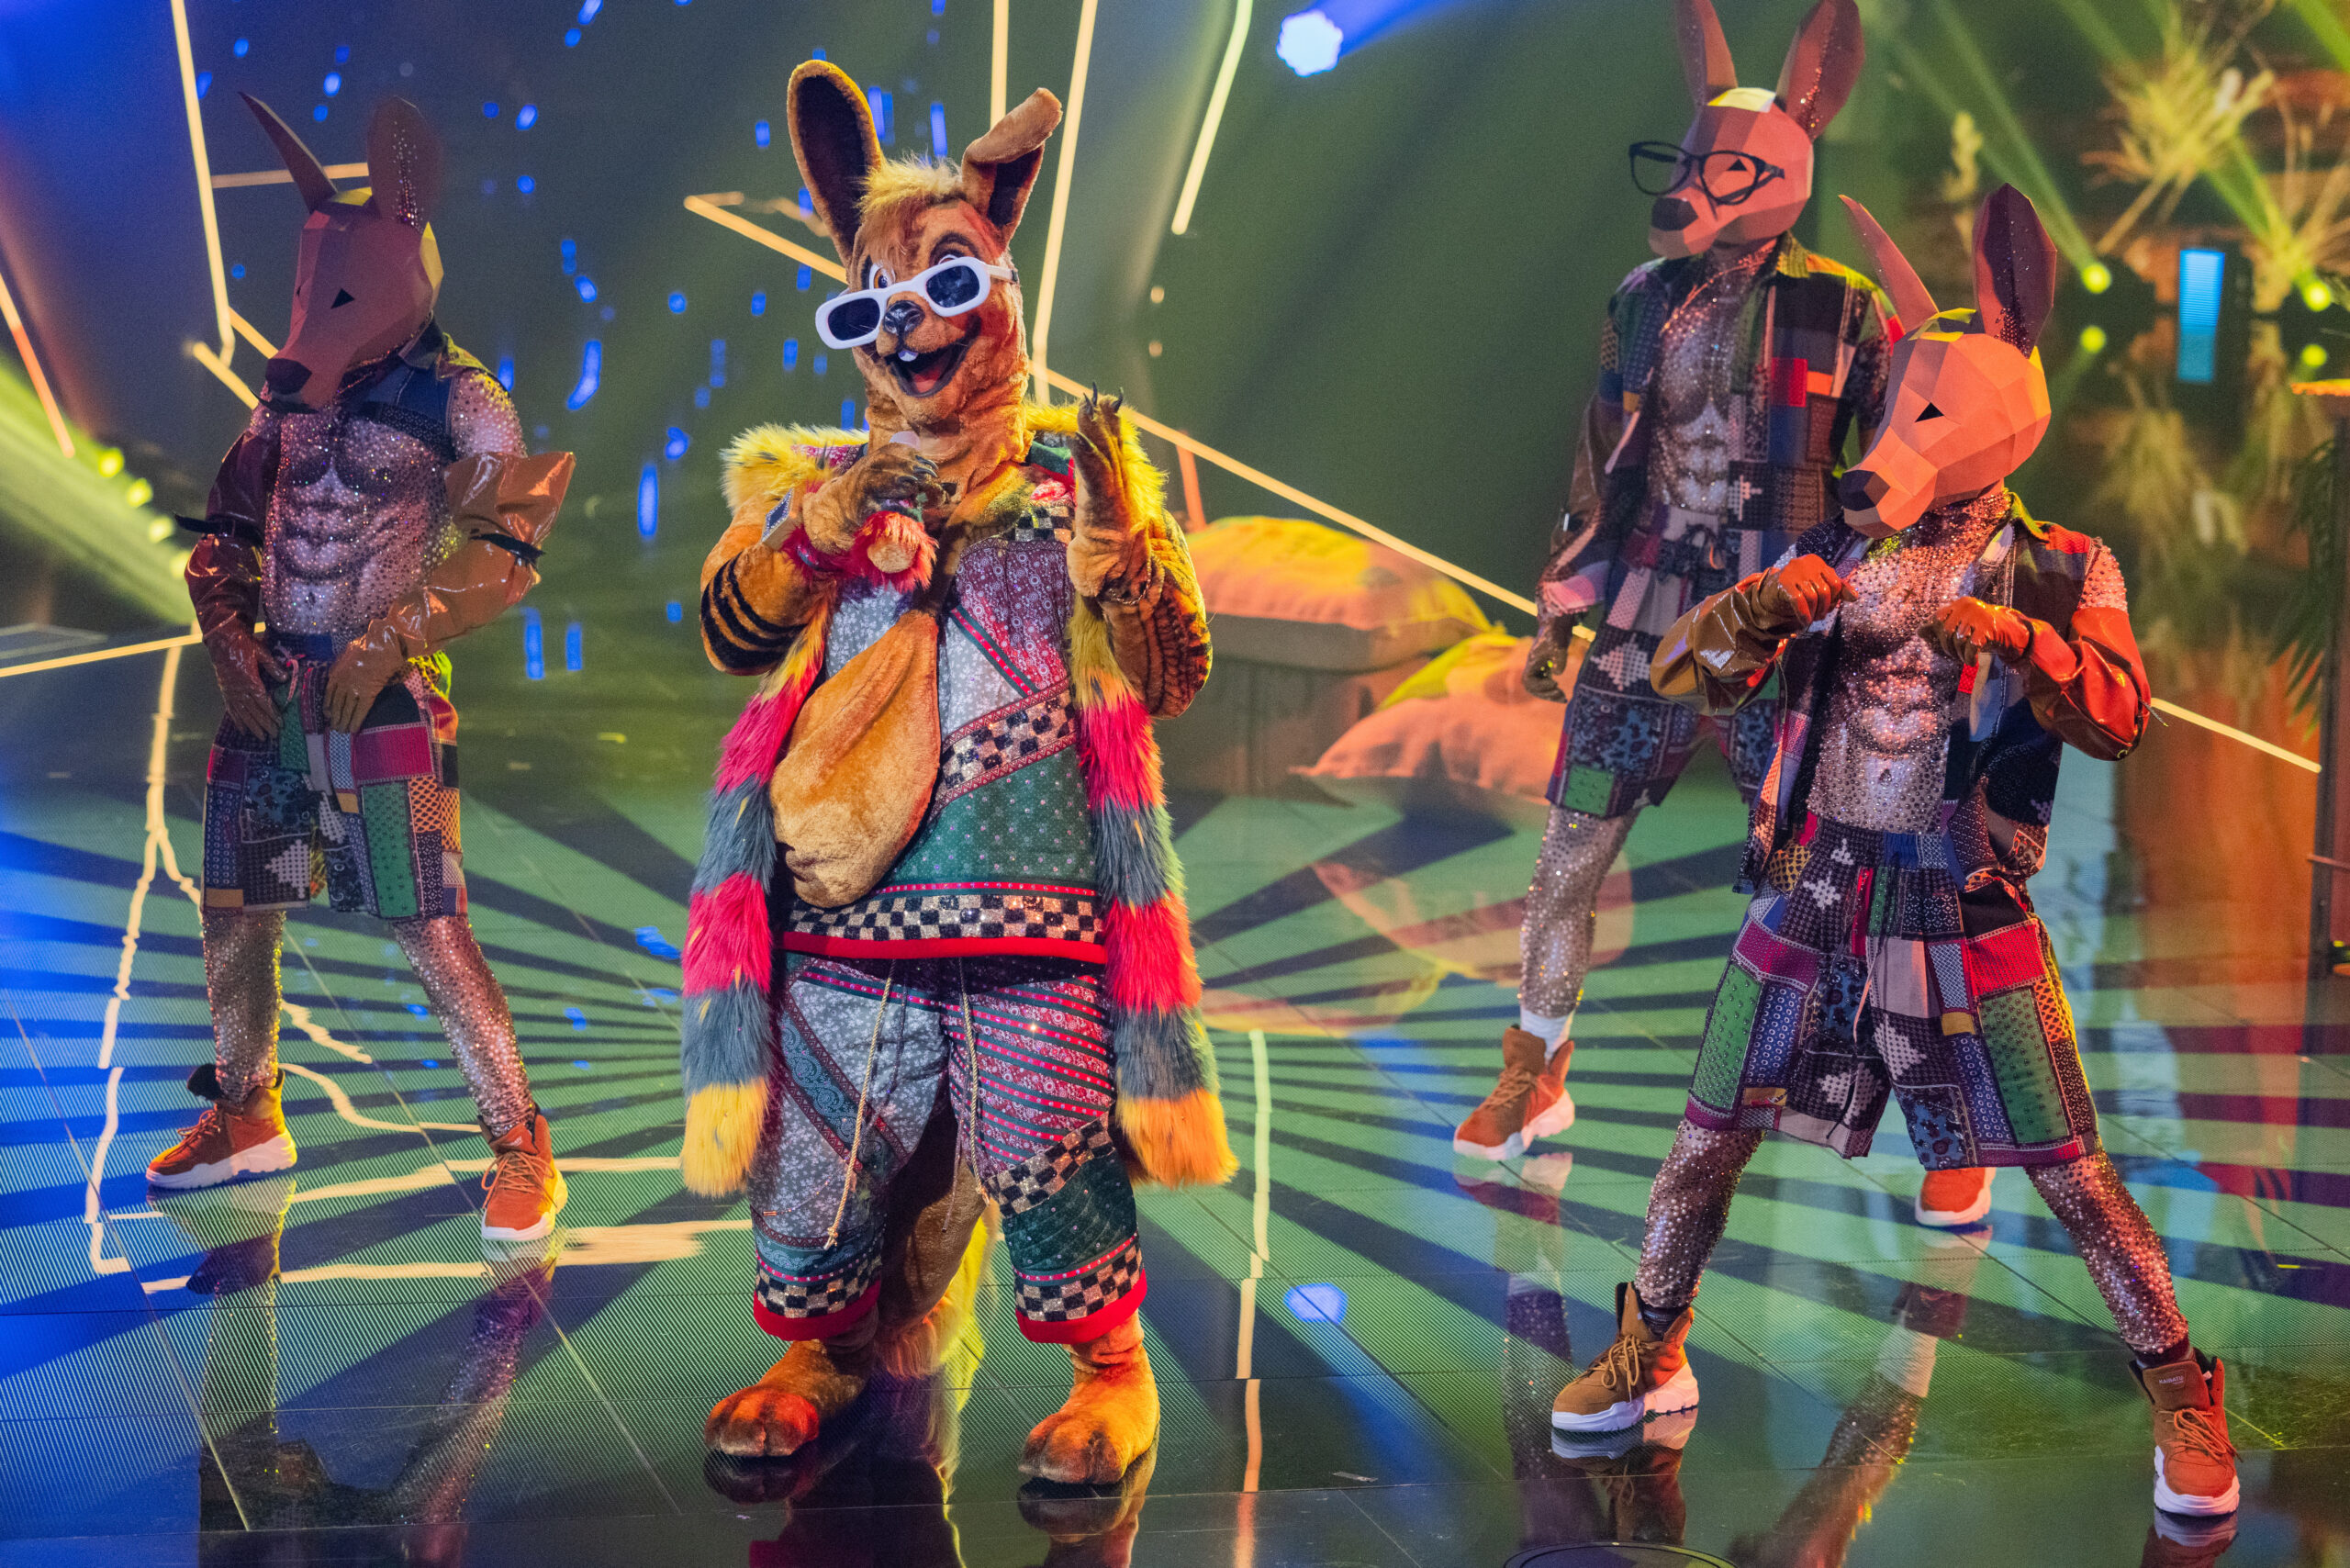 Die Figur "Das Känguru" steht in der Prosieben-Show "The Masked Singer" auf der Bühne.